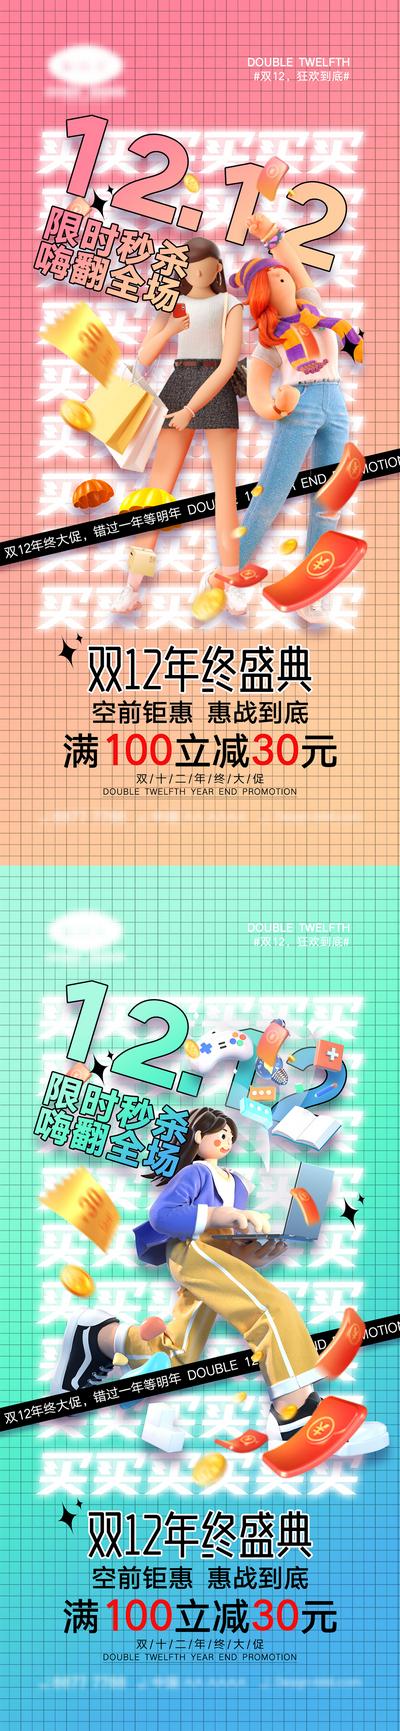 南门网 海报 活动 促销 双11 狂欢 购物 优惠 双十一 双12 双十二 12.12